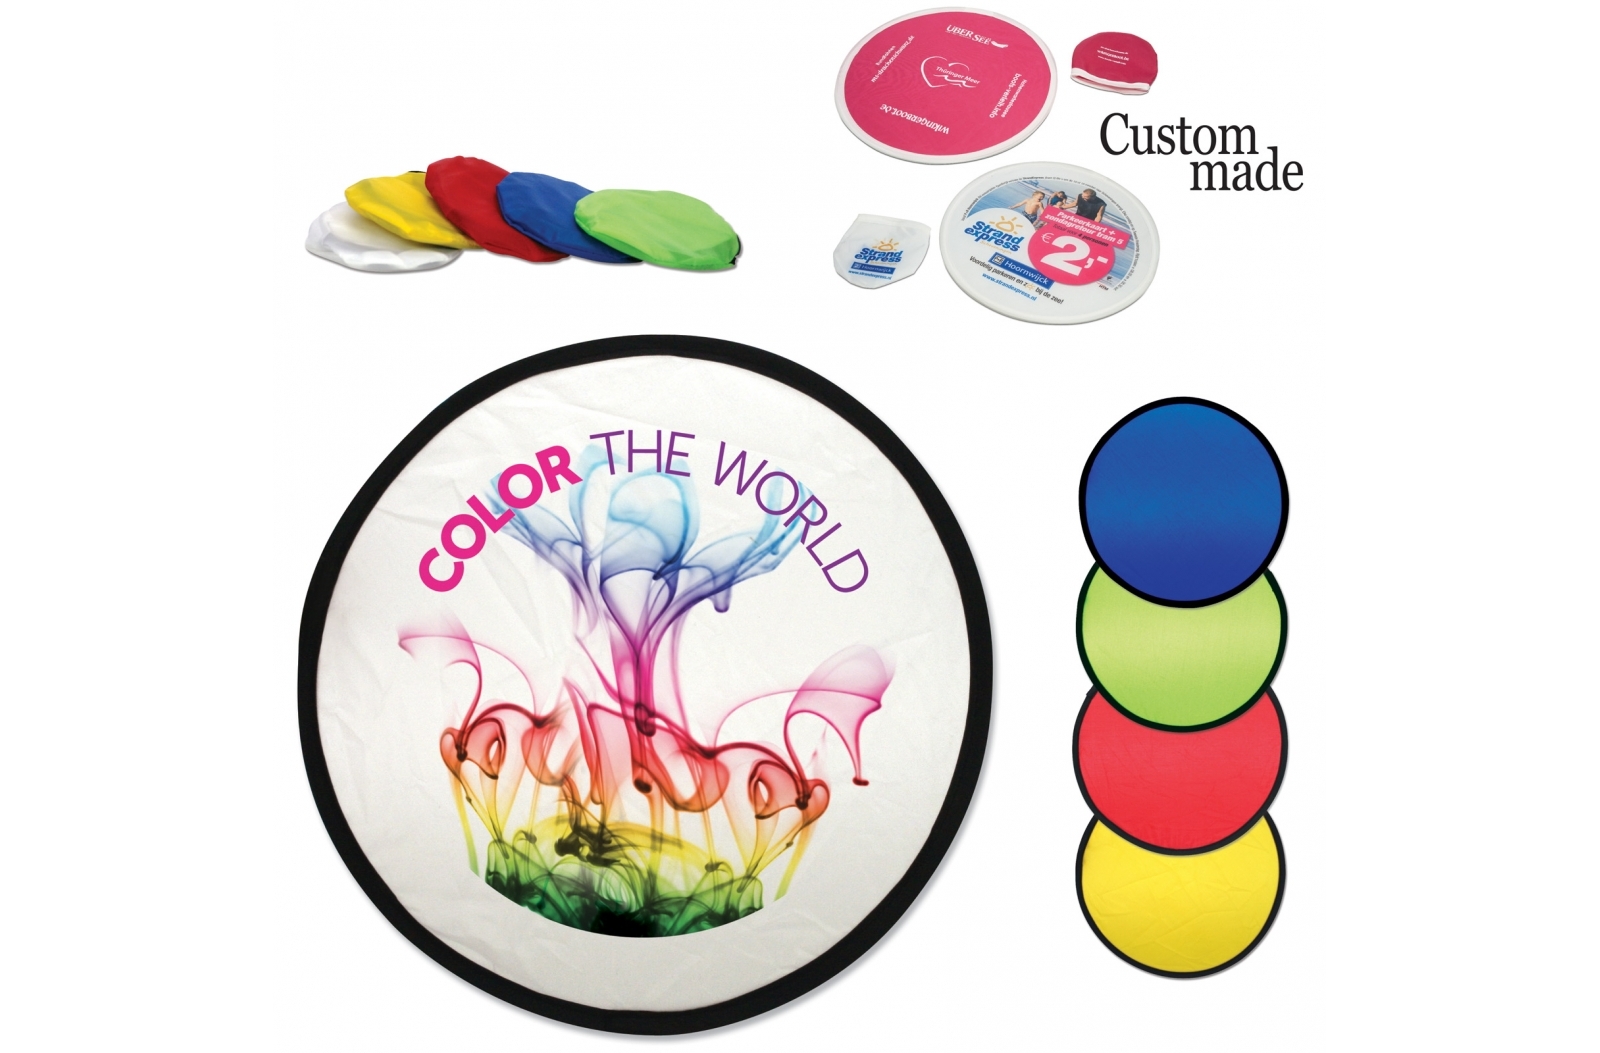 Frisbee de Nylon Plegable con Bolsa - Cariñena